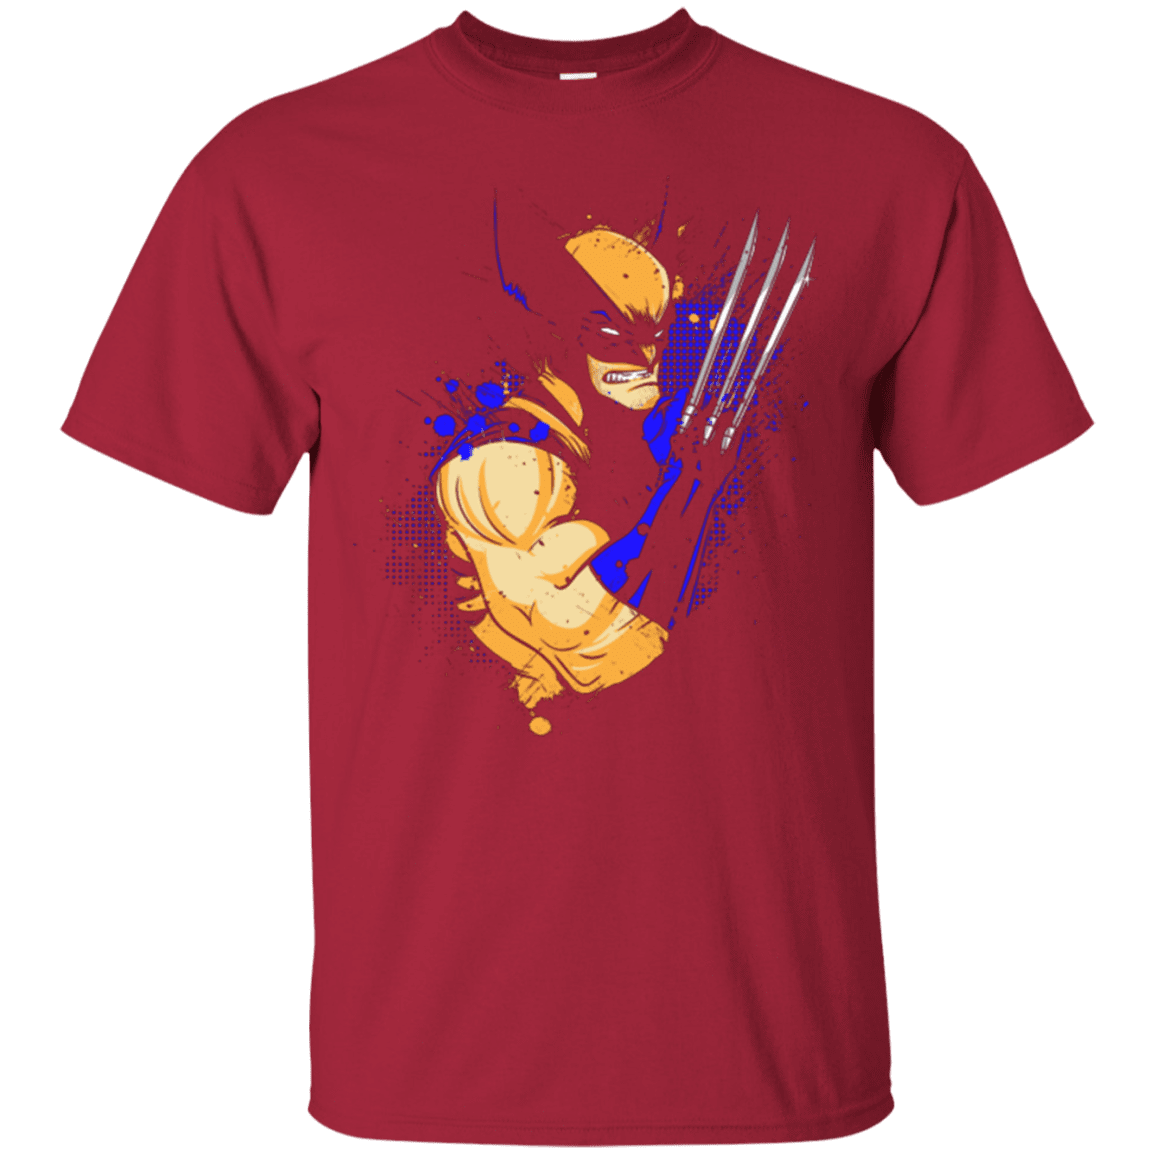 T-Shirts Cardinal / Small Adamantium T-Shirt